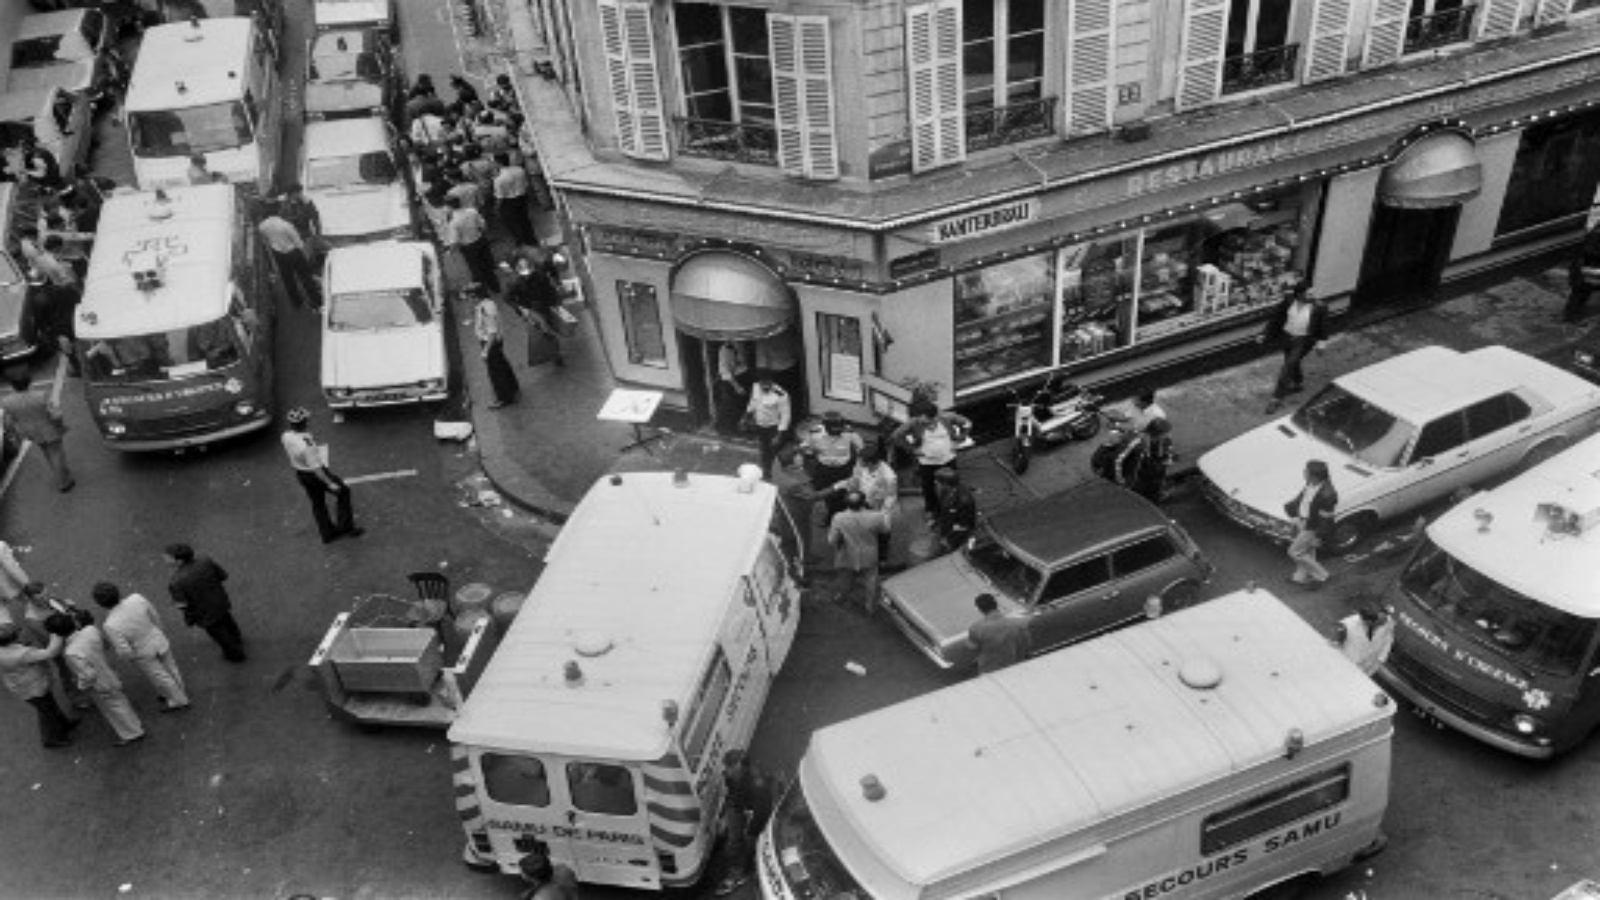 صورة بعد الحادث في الحي اليهودي في باريس الذي شهد الهجوم عام 1982 وأسفرعن مقتل ستة أشخاص وإصابة 22 آخرين 